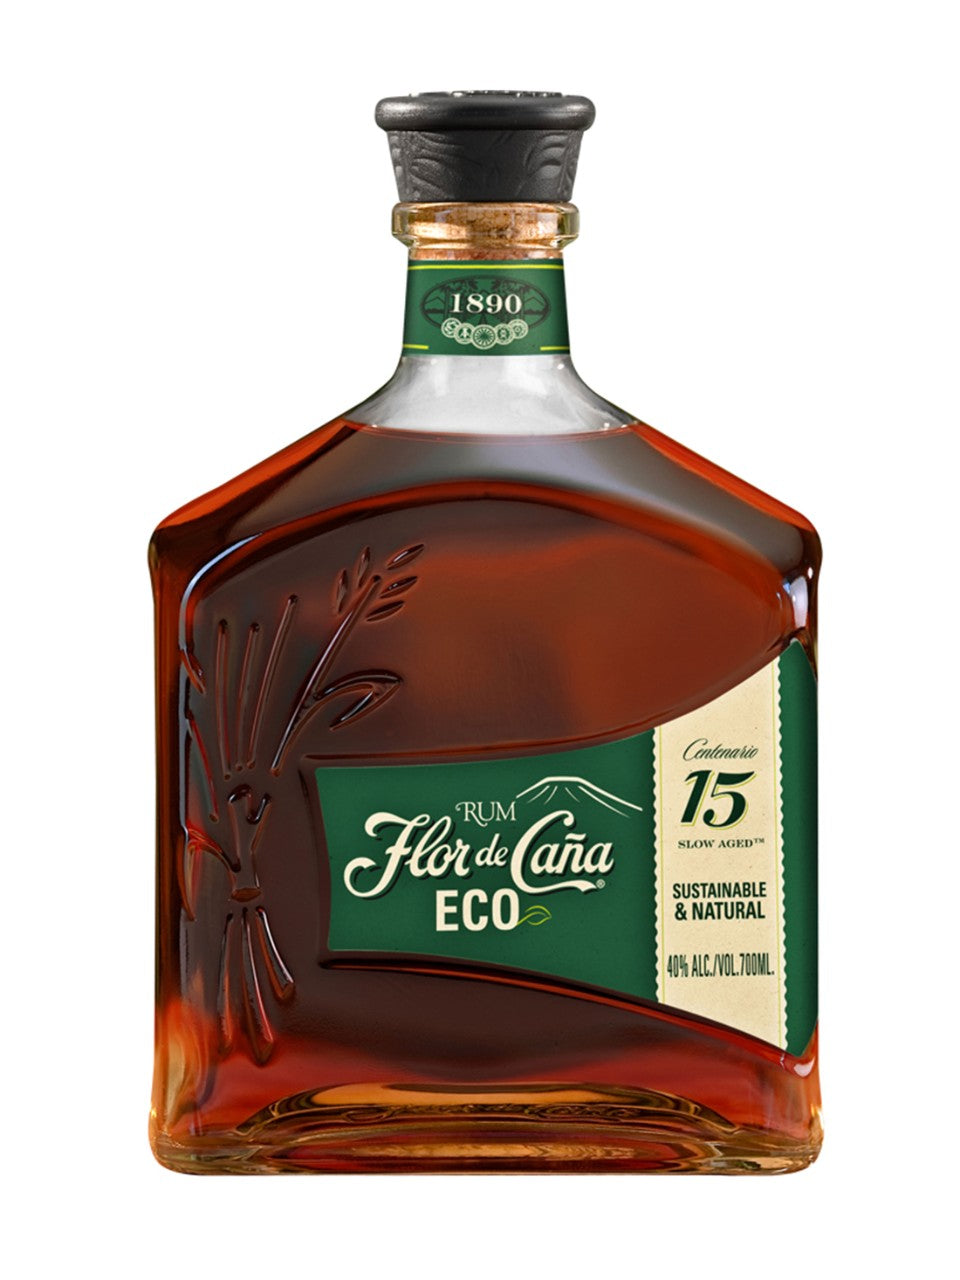 Flor De Cana Eco-15 750 ml bottle